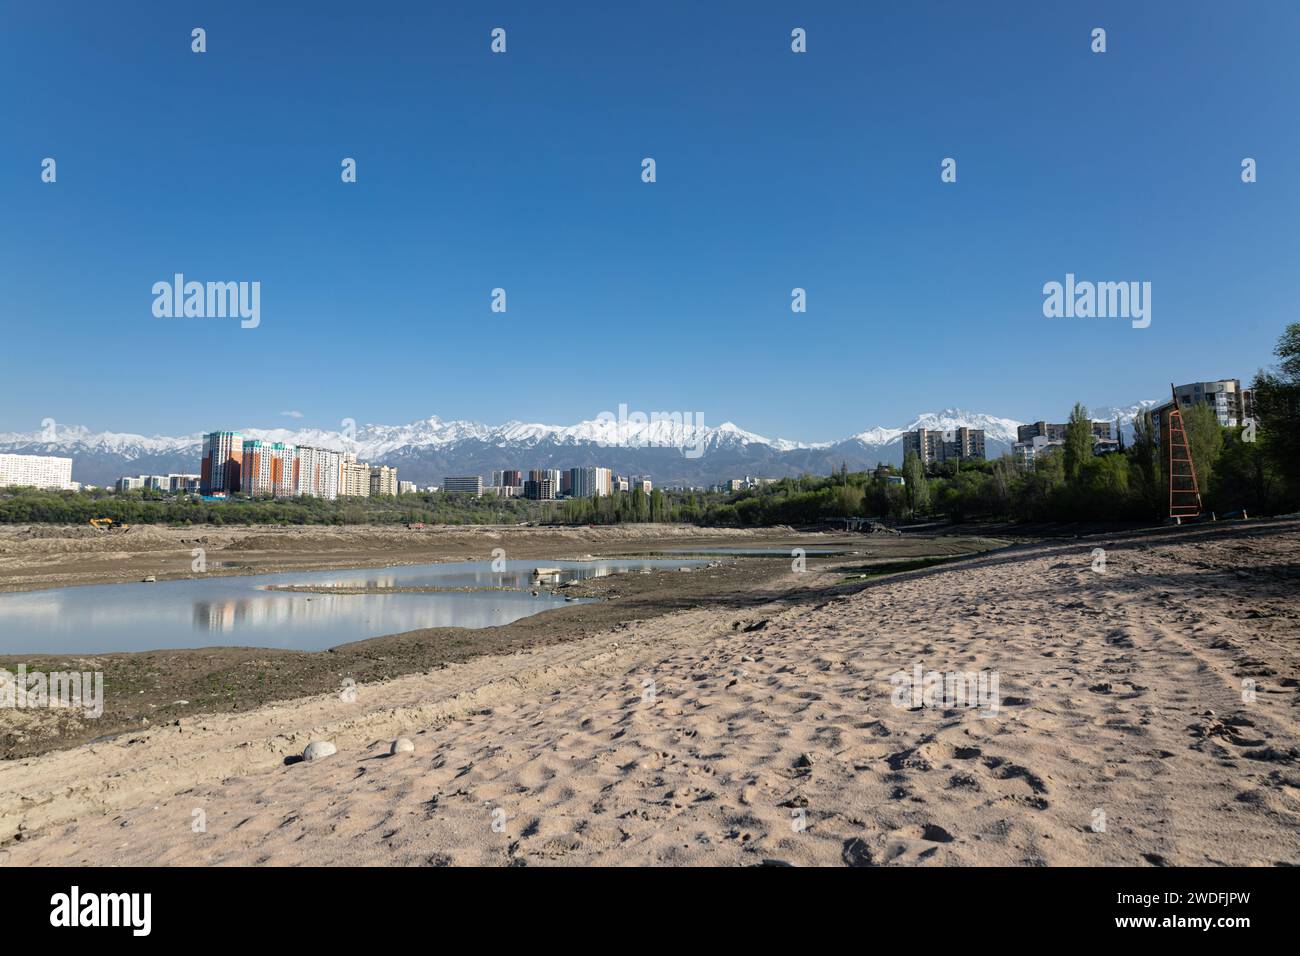 Serbatoio di stoccaggio Lago Sayran, Almaty, Kazakistan. Spiaggia di sabbia di Empty City con laghetto drenato. Edifici residenziali e alta cima innevata Foto Stock